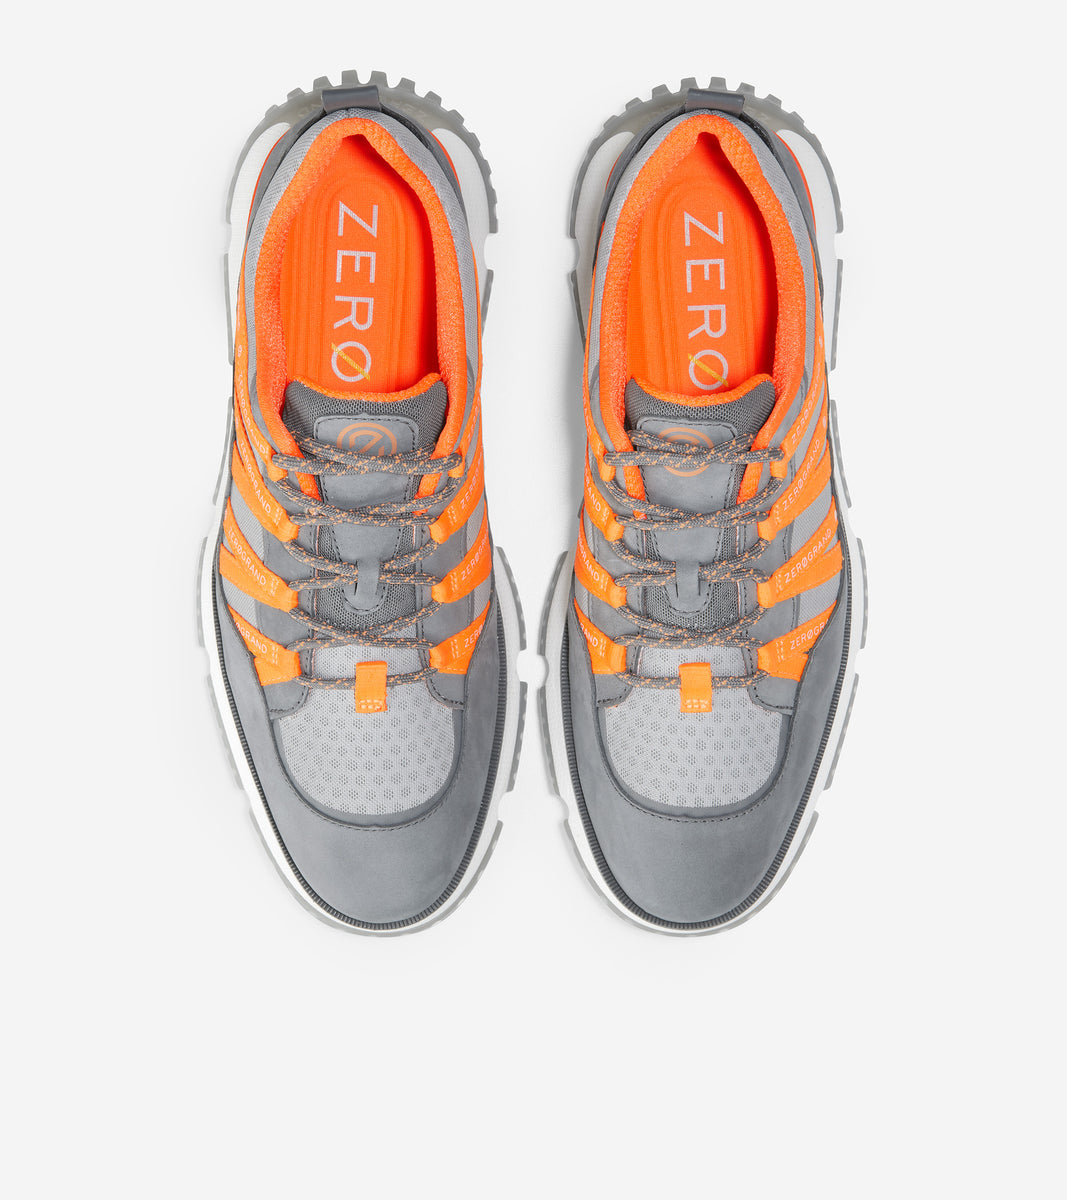 ColeHaan-4.ZERØGRAND Seventy-Five Sneaker-c33840-Quiet Shade-Sleet-Vibrant Orange